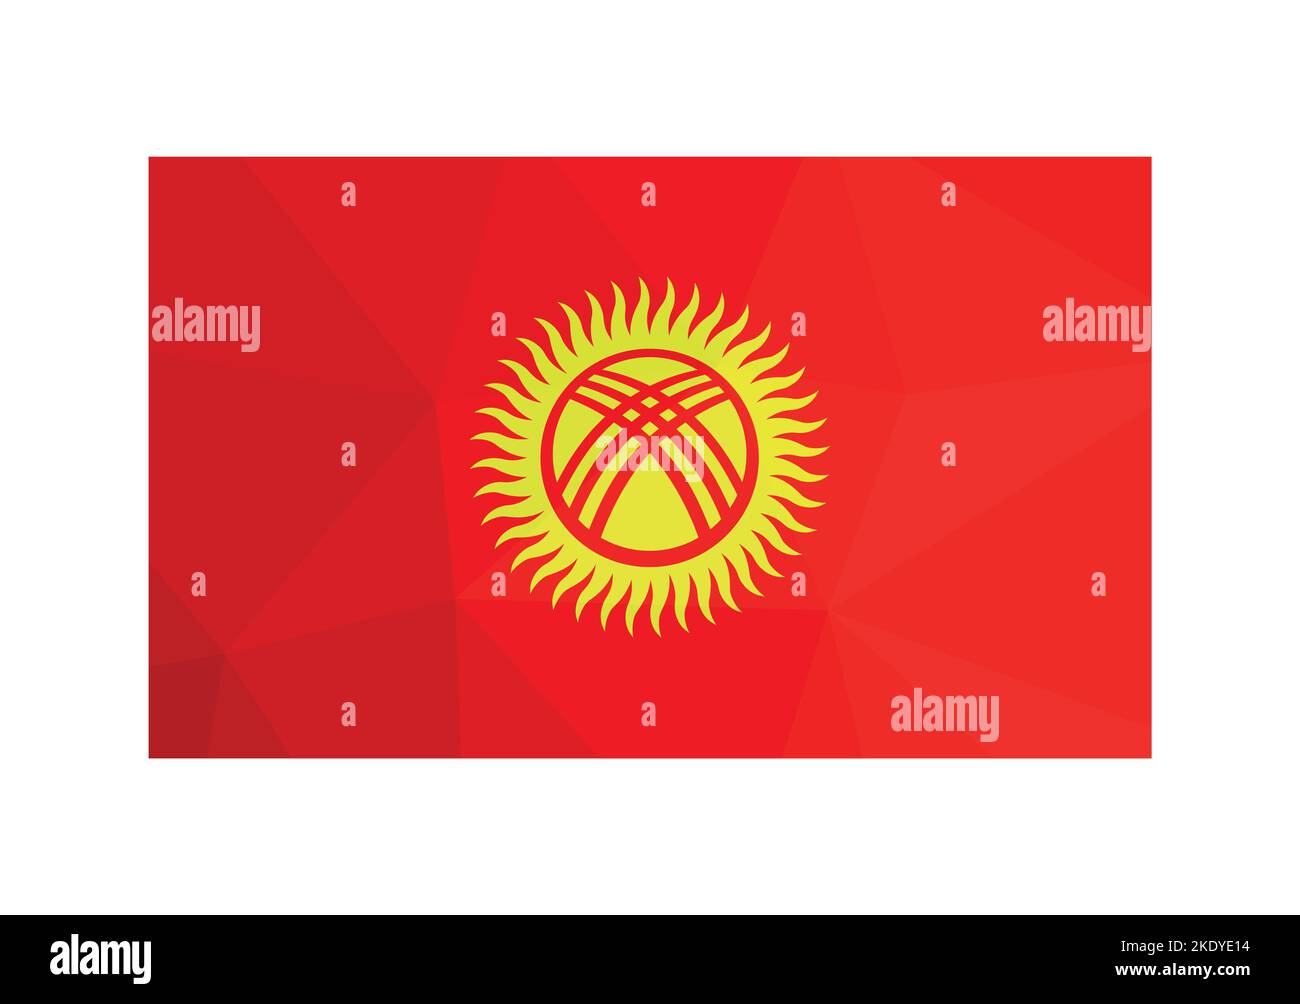 Illustrazione vettoriale. Firma ufficiale del Kirghizistan. Bandiera nazionale di colore rosso e giallo. Design creativo in stile poly basso con forme triangolari. Illustrazione Vettoriale